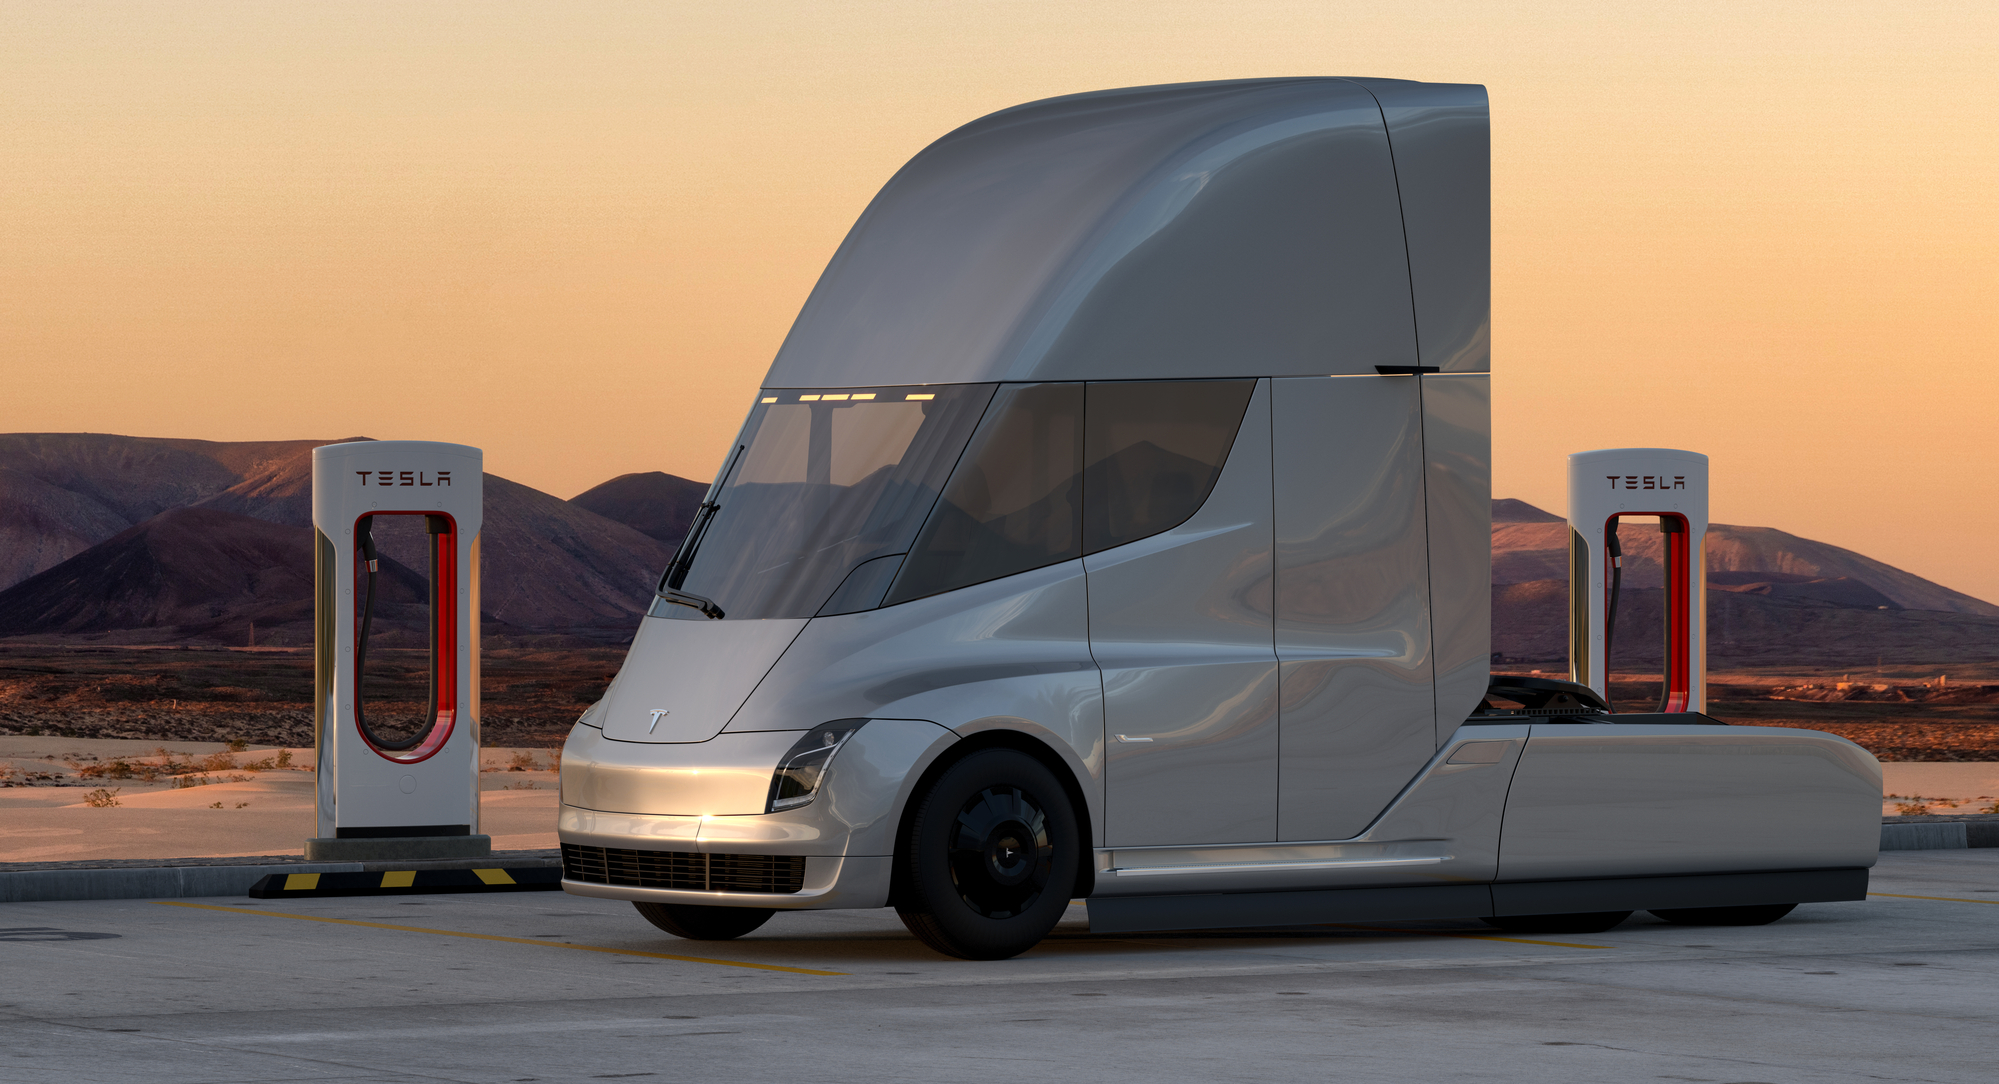 bleek Bloemlezing slepen Tesla Semi versus other electric trucks - PTOLEMUS